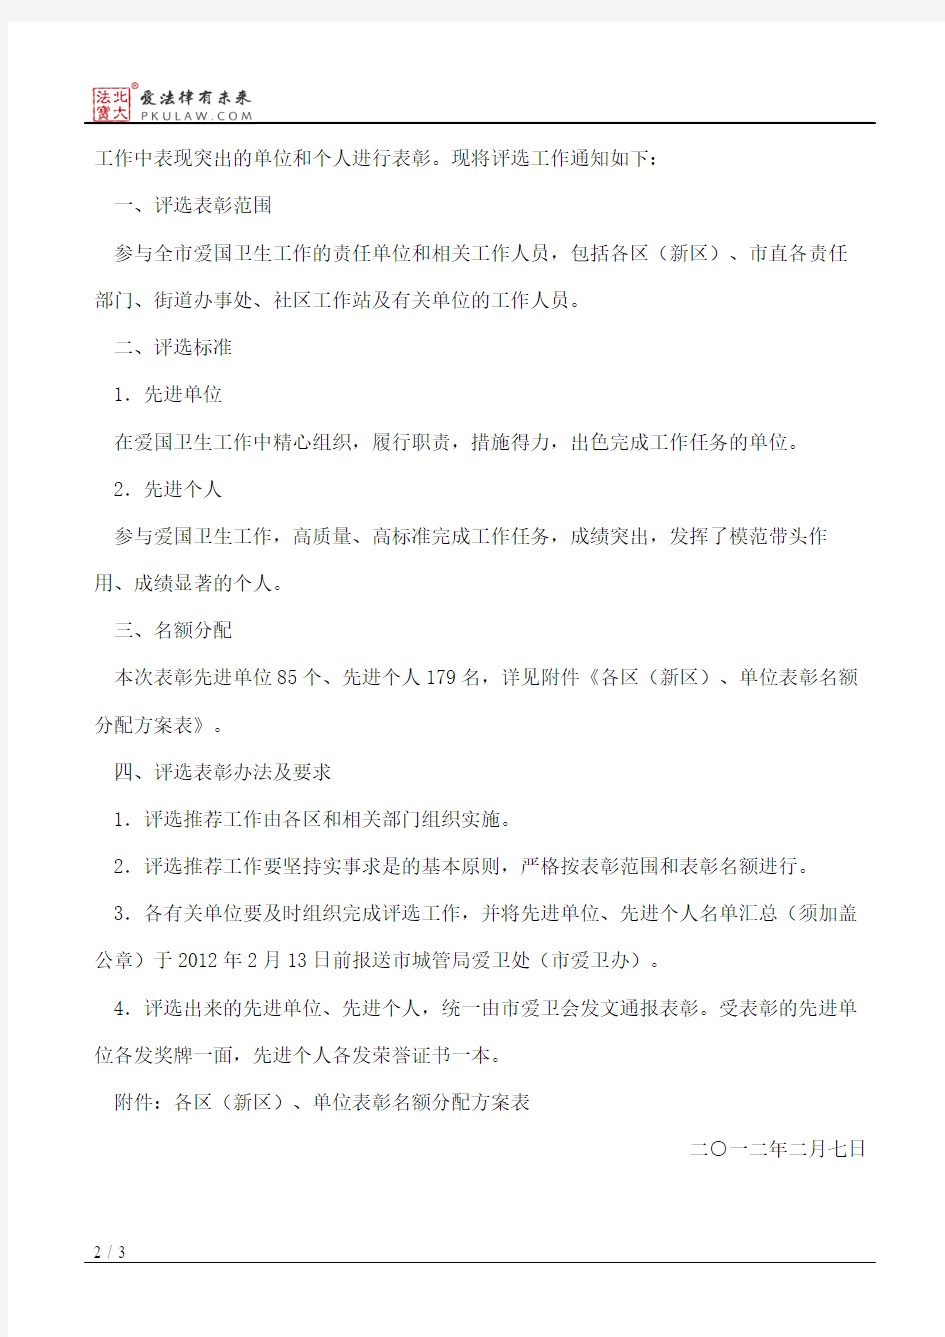 深圳市城市管理局关于评选2011年度深圳市爱国卫生工作先进单位和